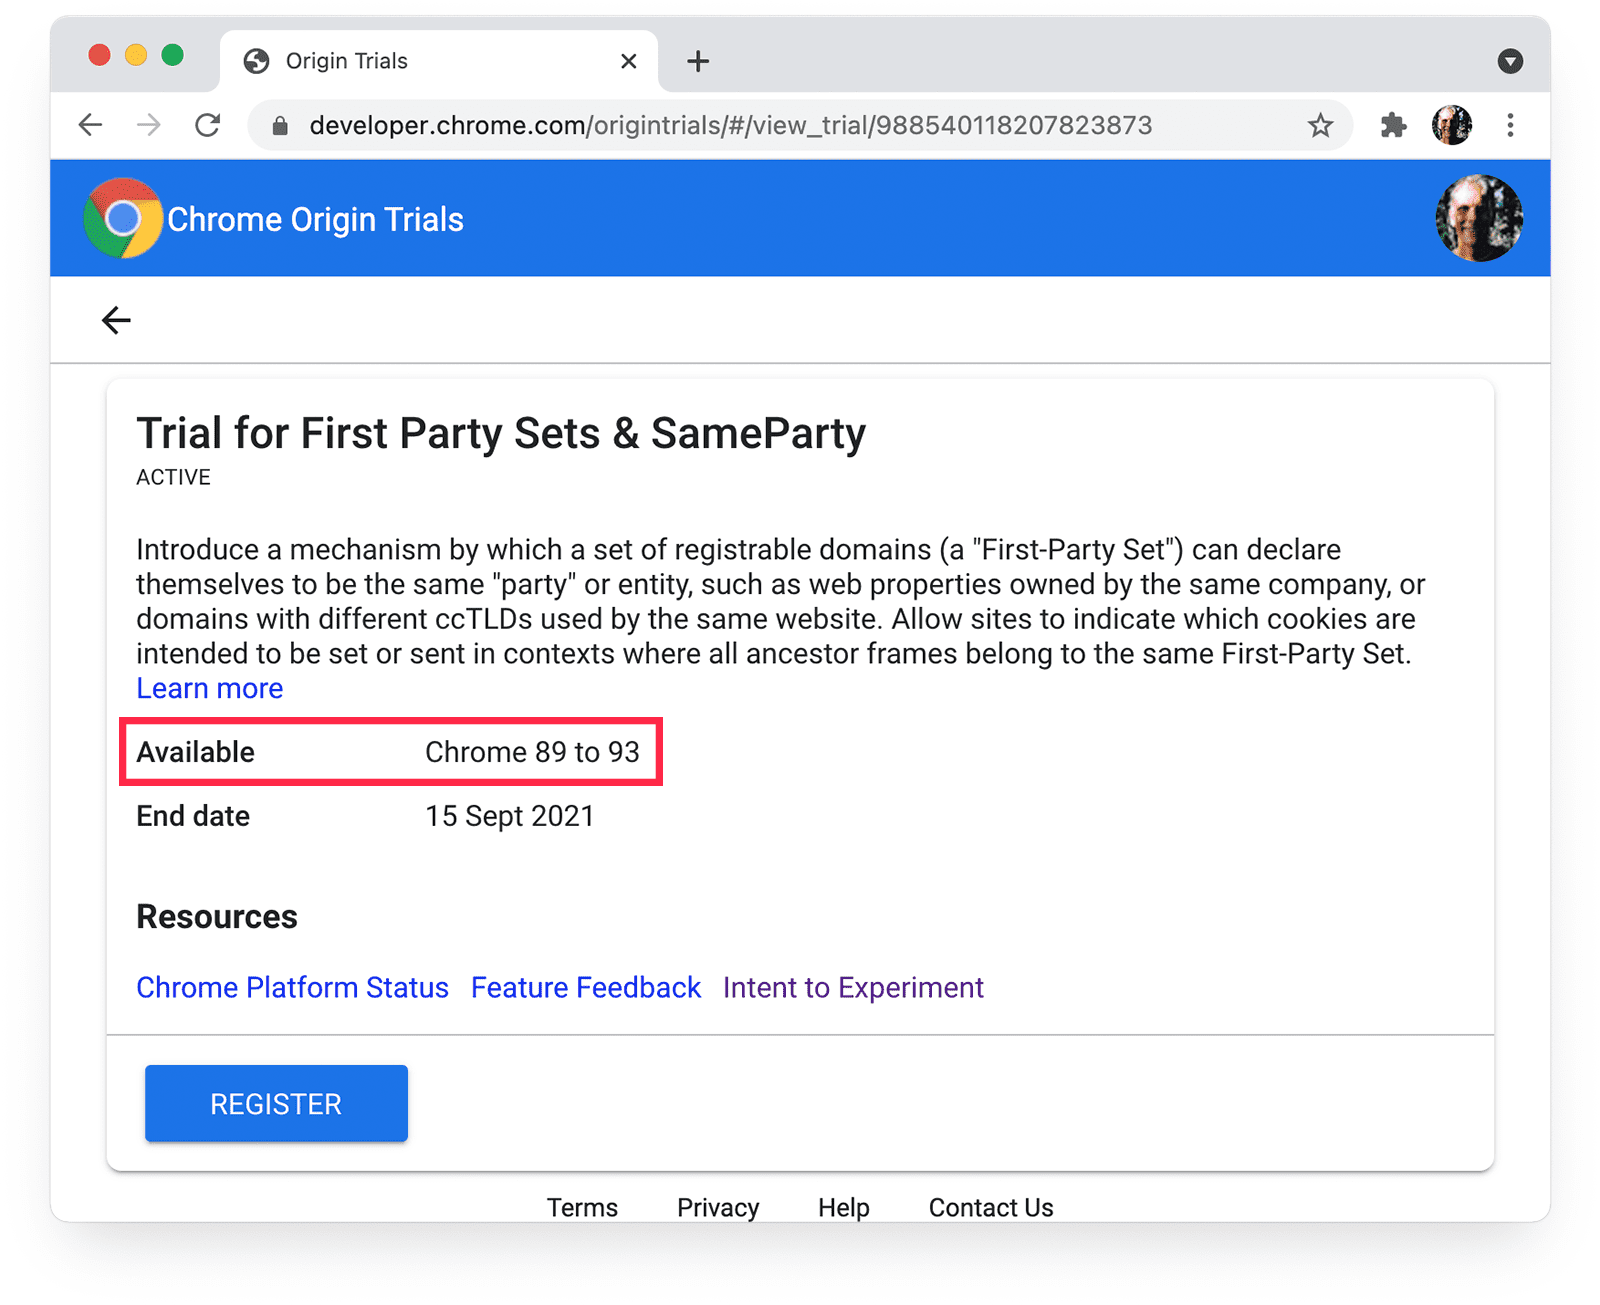 Página de testes de origem do Chrome
para conjuntos primários e SameParty com a disponibilidade do Chrome em destaque